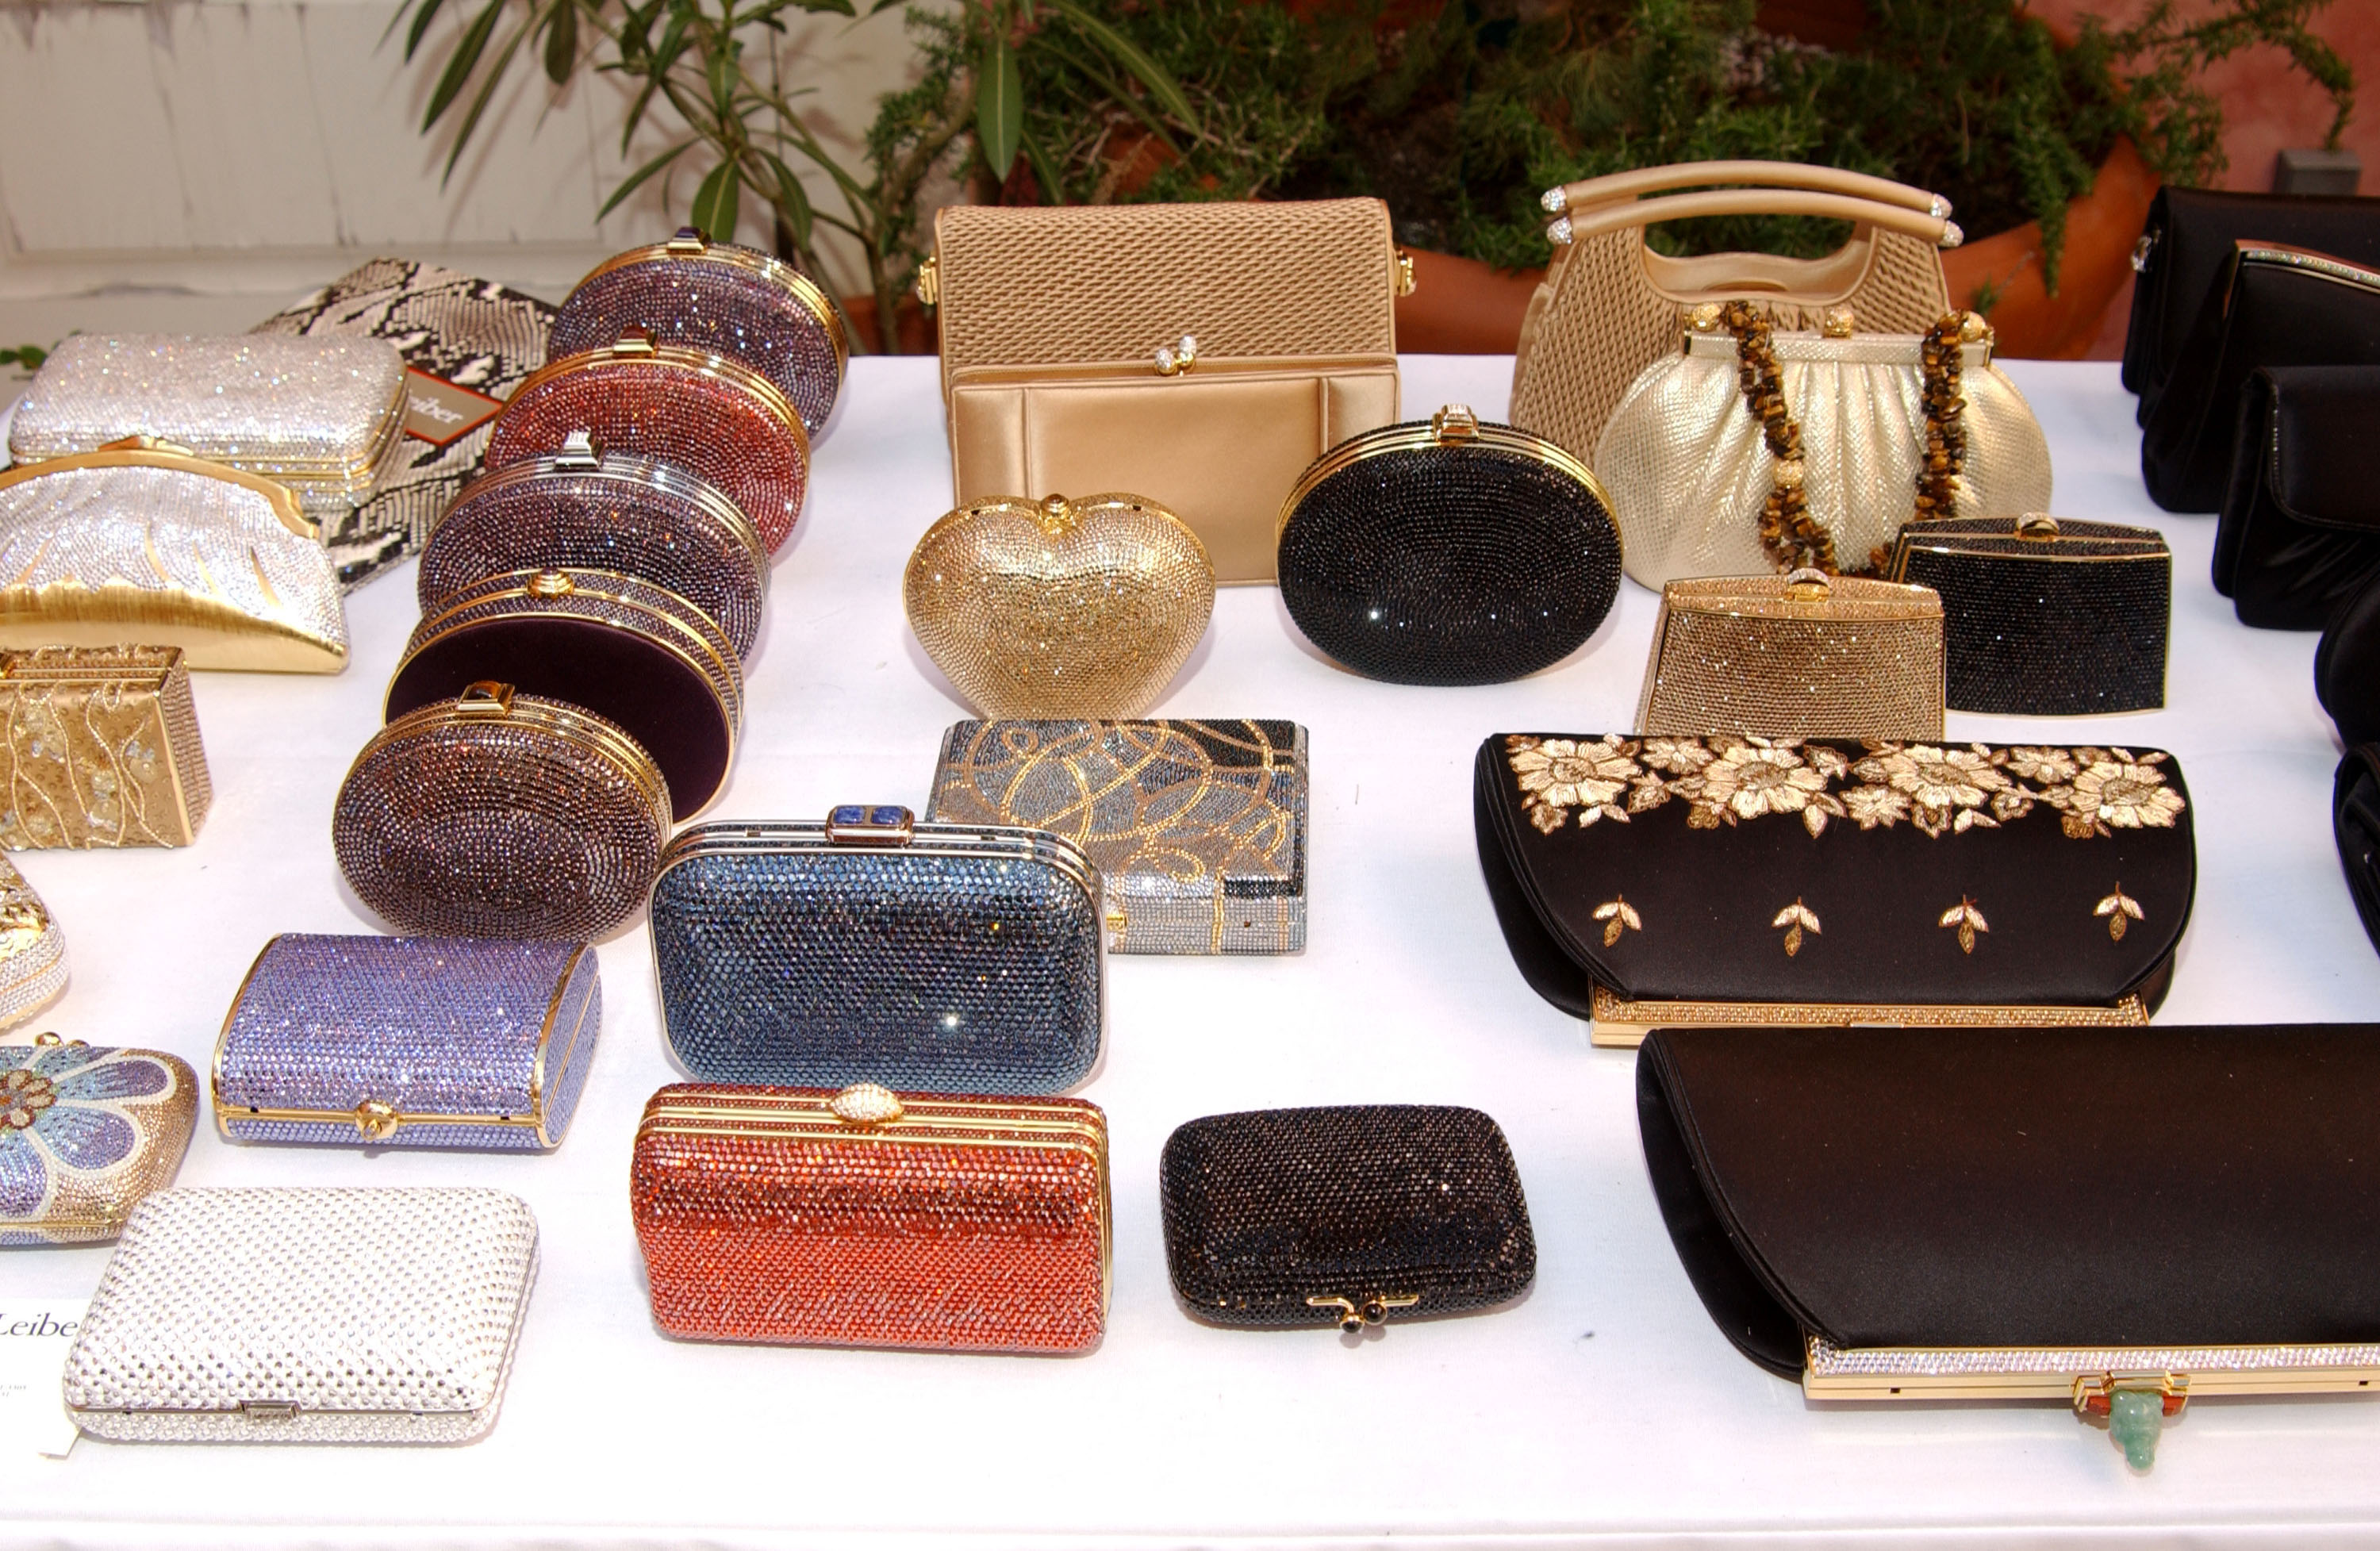 An assortment of Judith Leiber clutch handbags.